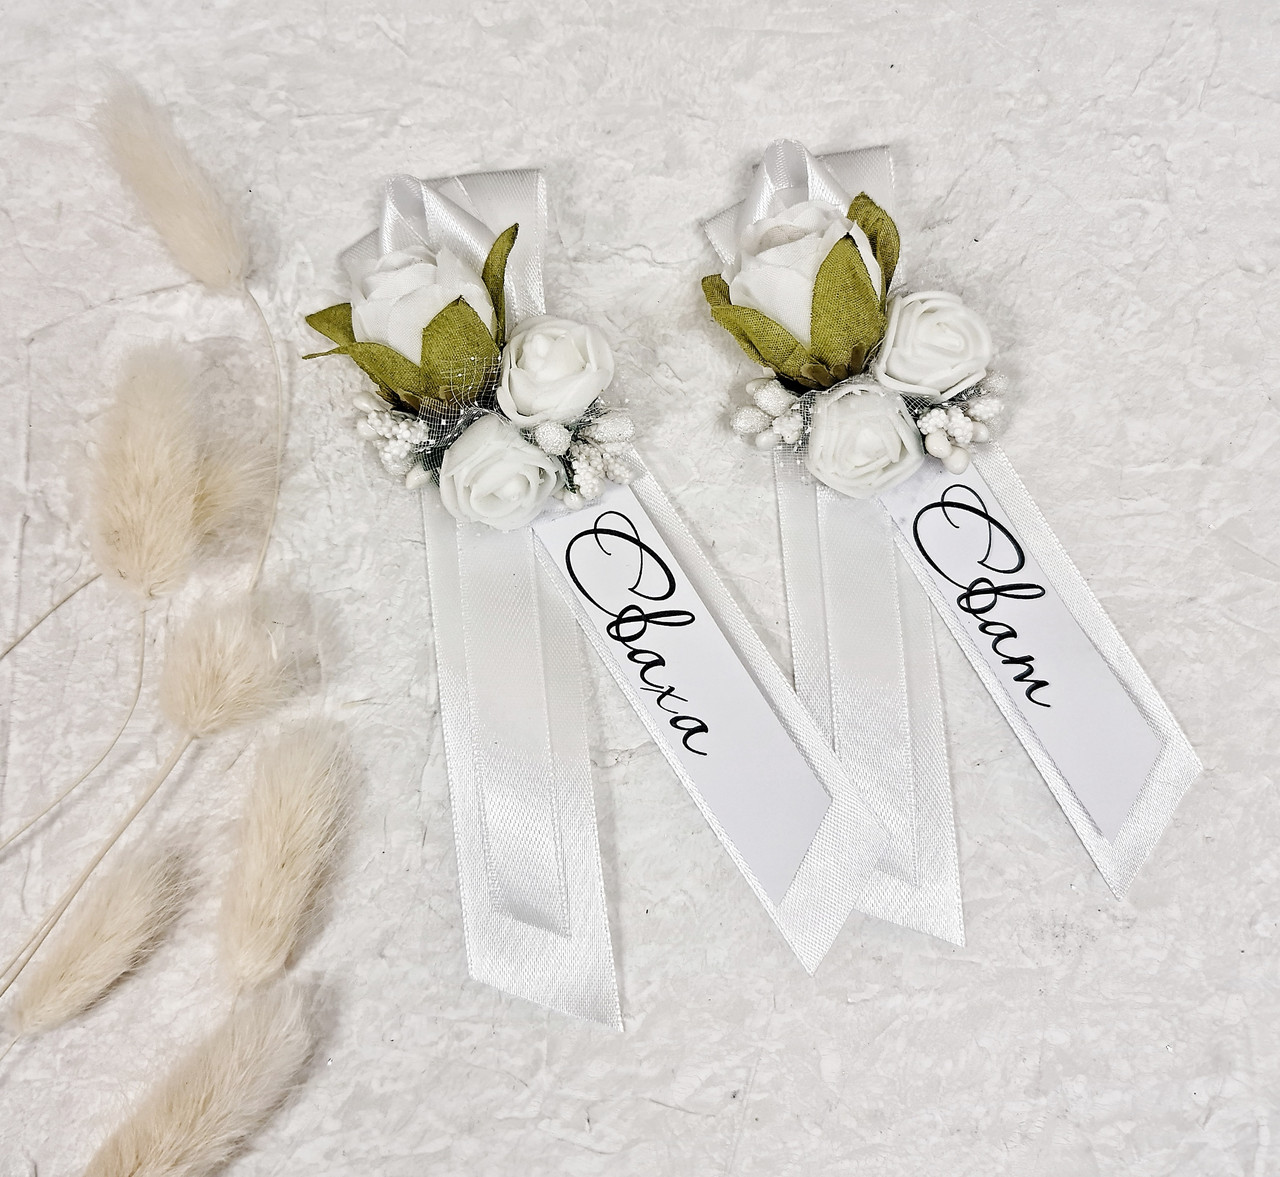 Ленточки для сватов в белом цвете